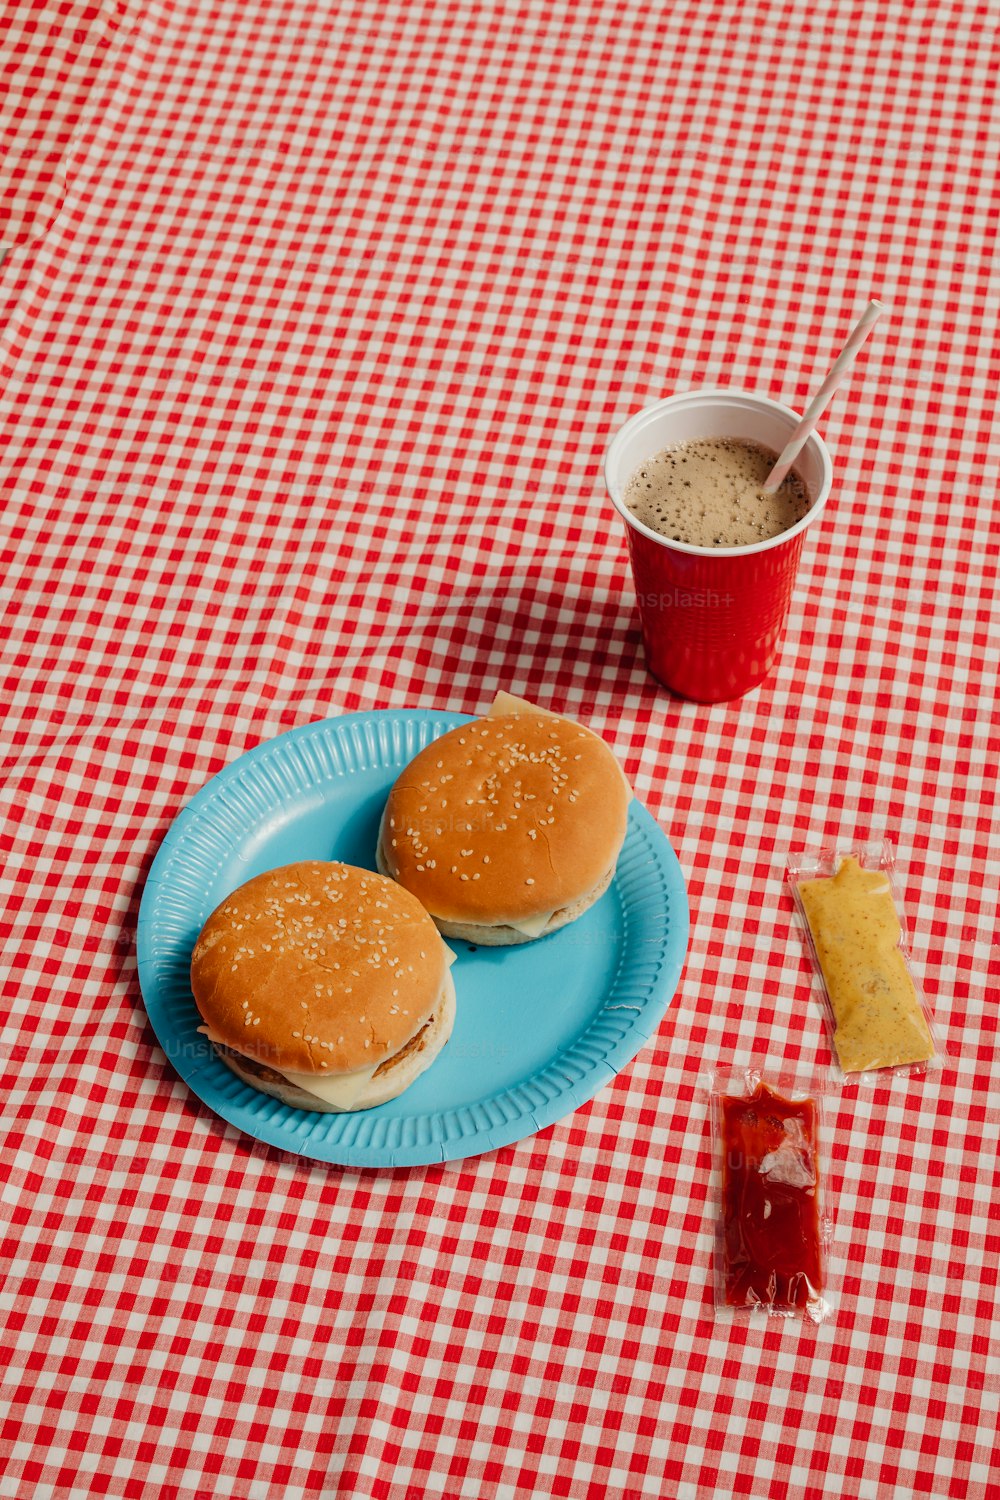 一杯のコーヒーの横にある青い皿に2つのハンバーガー